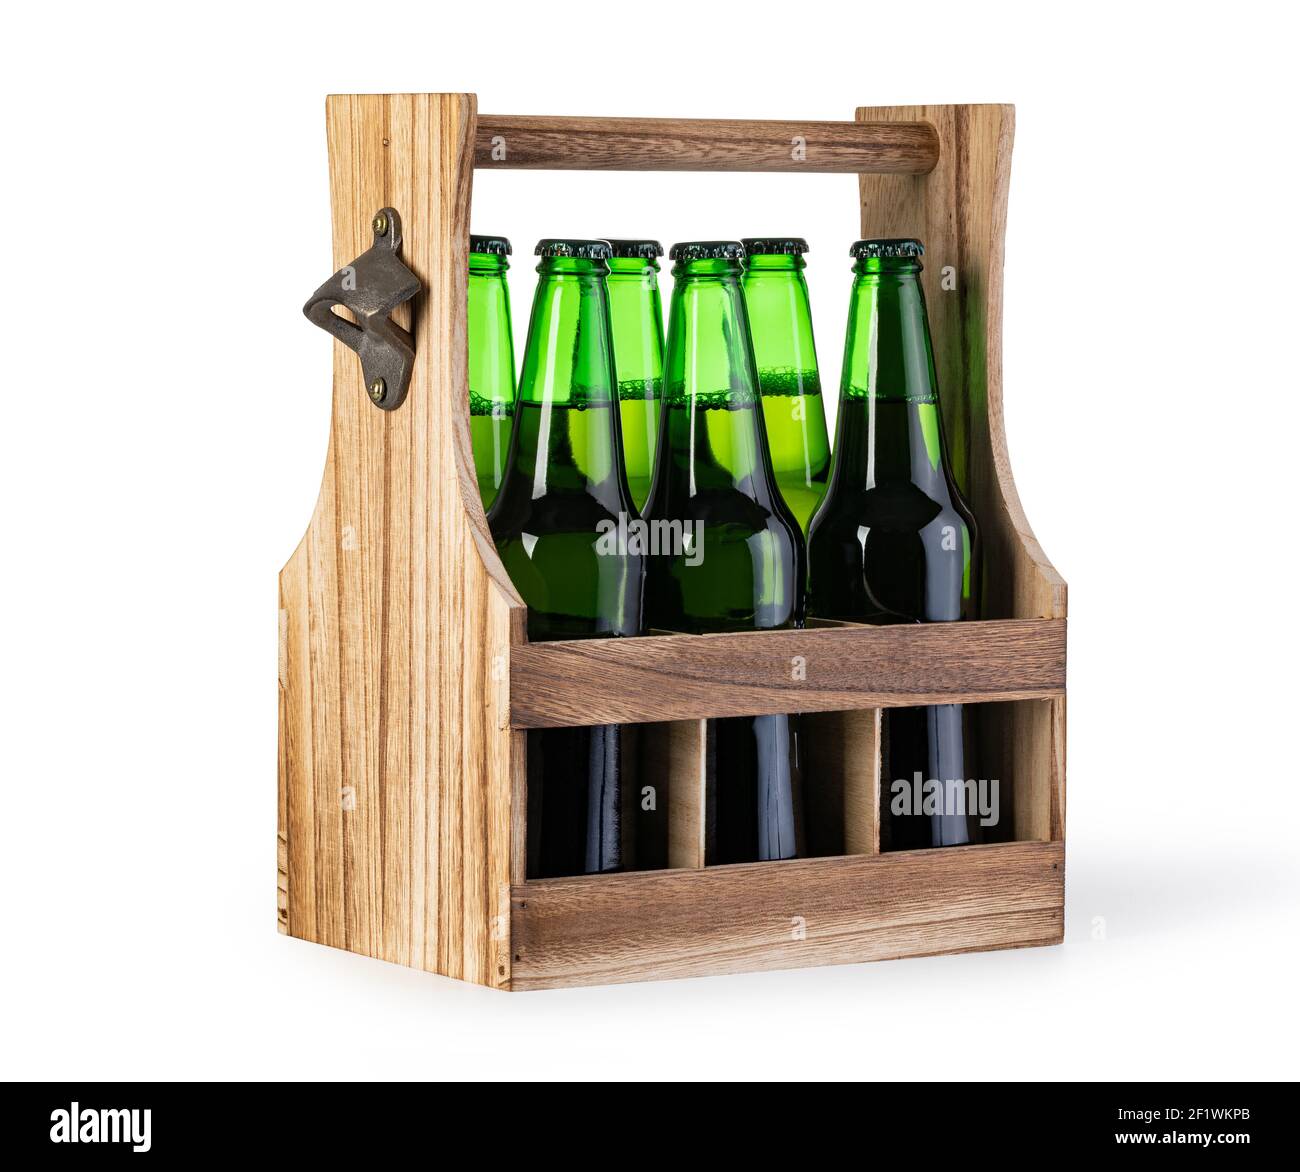 6 Slot Burnt Wood and Black Metal BEER Cutout Beverage Carrier, Beer C –  MyGift